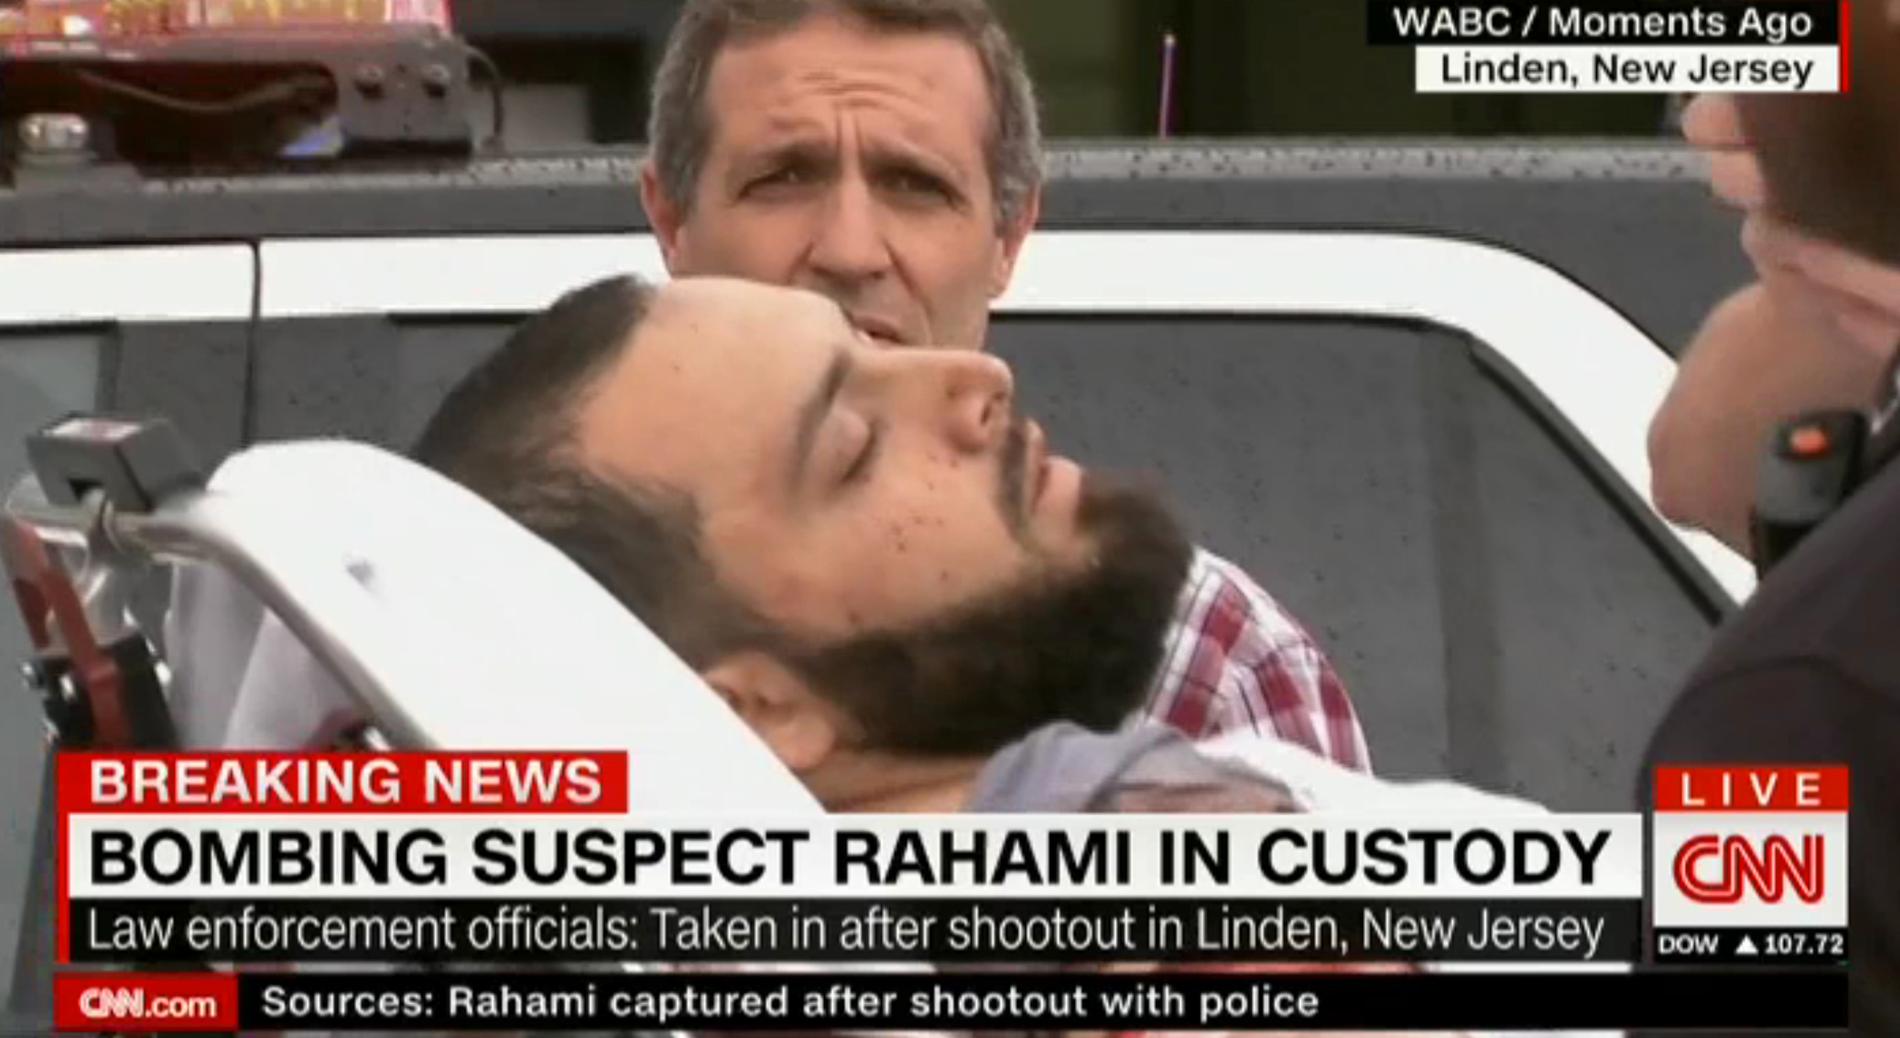 I CNN:s sändningar kan man se när den misstänkte förs iväg på bår.